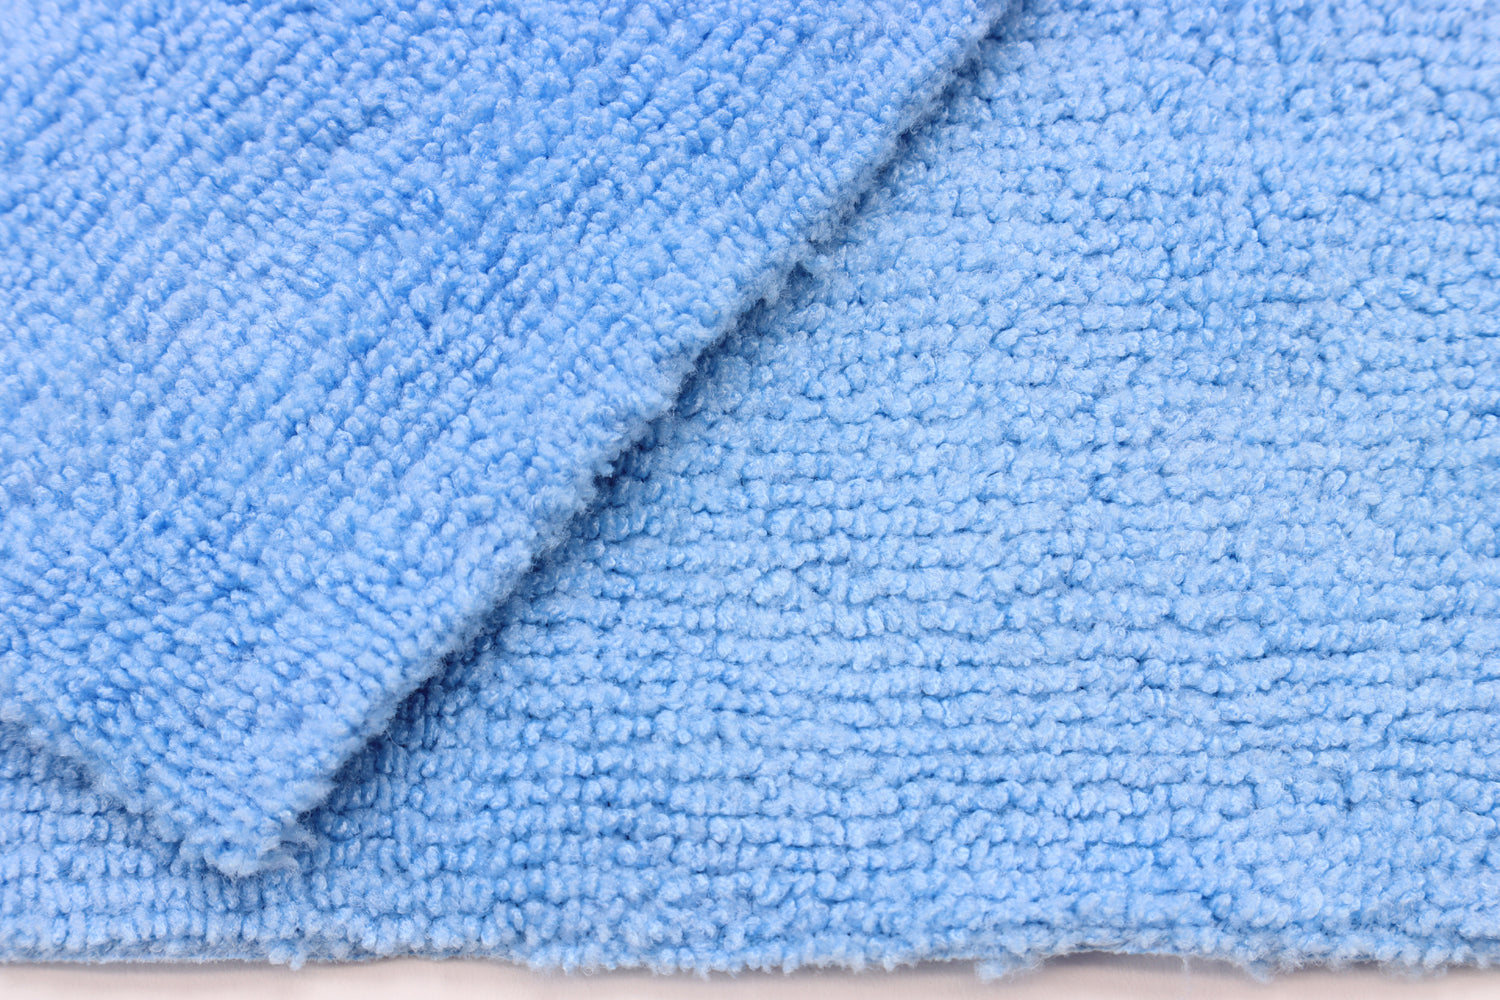 Autofiber Towel [Utility 400E] Edgeless All-Purpose Towel 400gsm 16"x16" - 10 pack